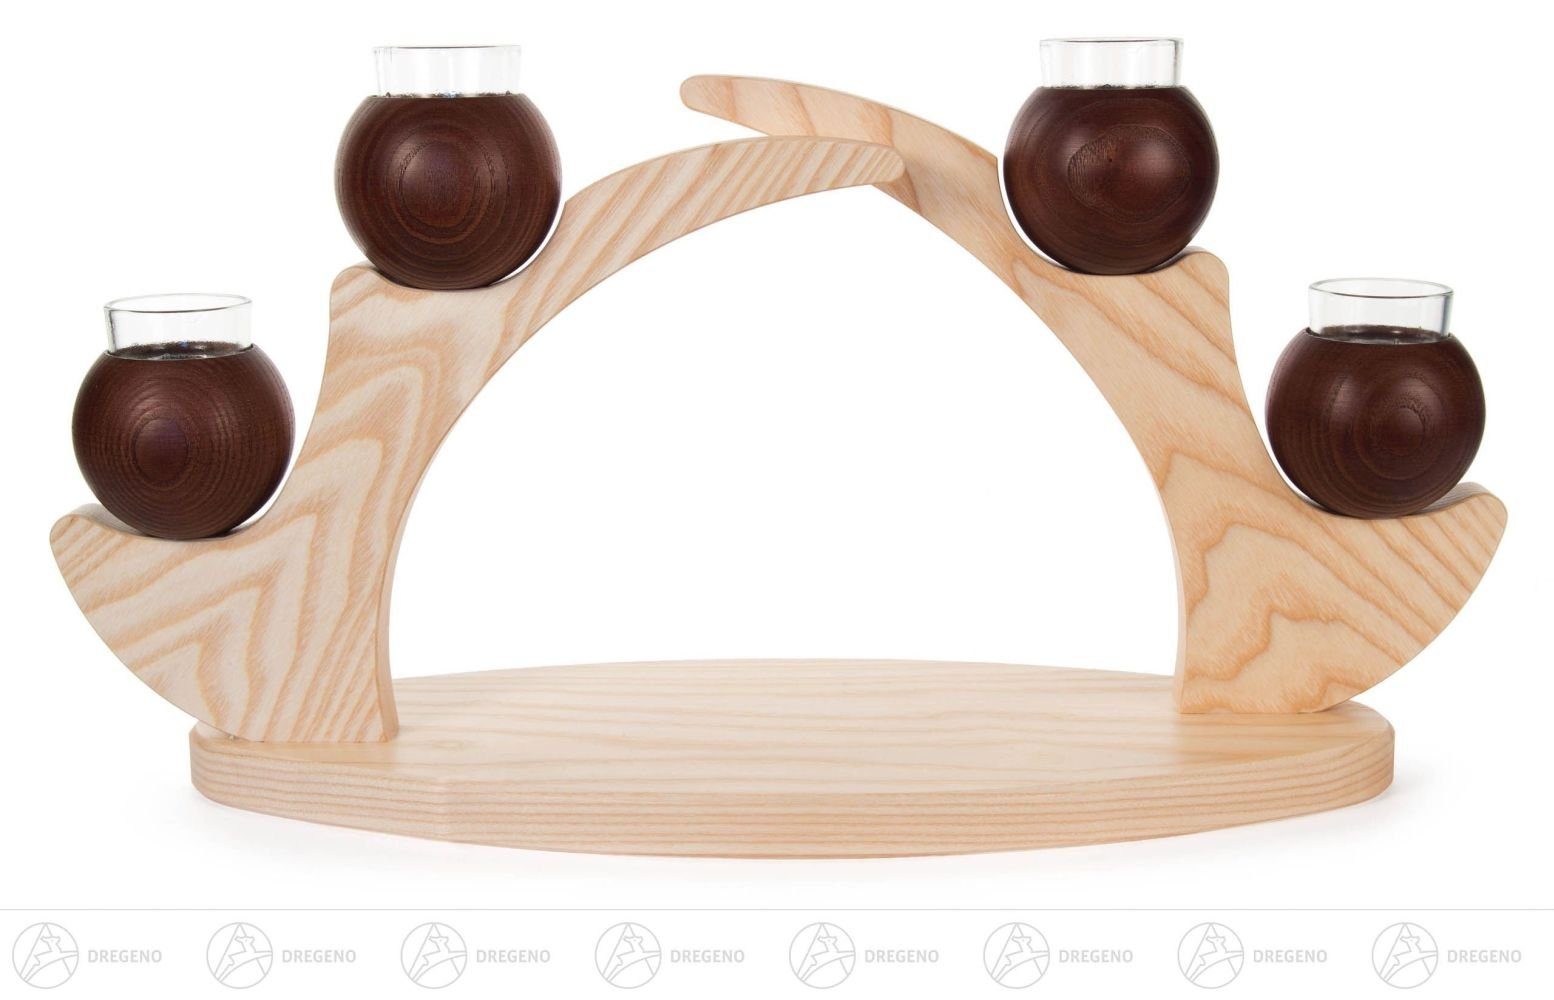 Dregeno Erzgebirge Kerzenhalter Tischleuchter für 4 Kerzen braun, aus Massivholz BxHxT 460 x 240 x 15, schlichtes schönes Design | Kerzenständer